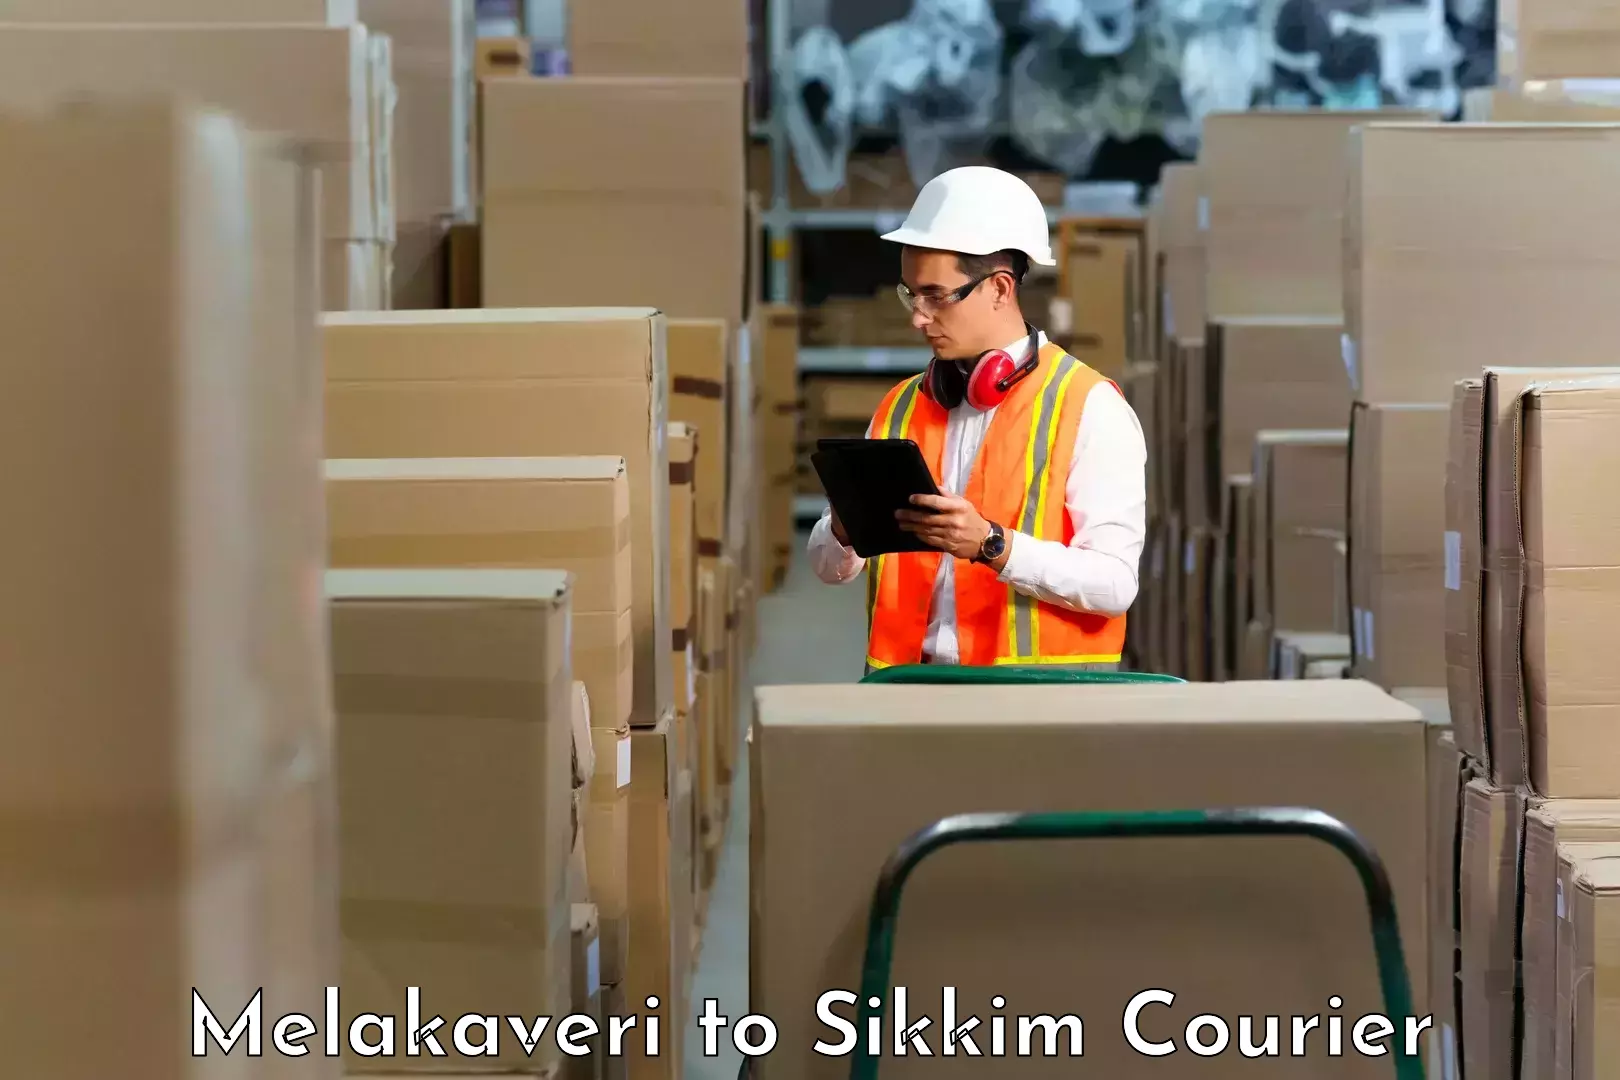 Efficient order fulfillment Melakaveri to Pelling